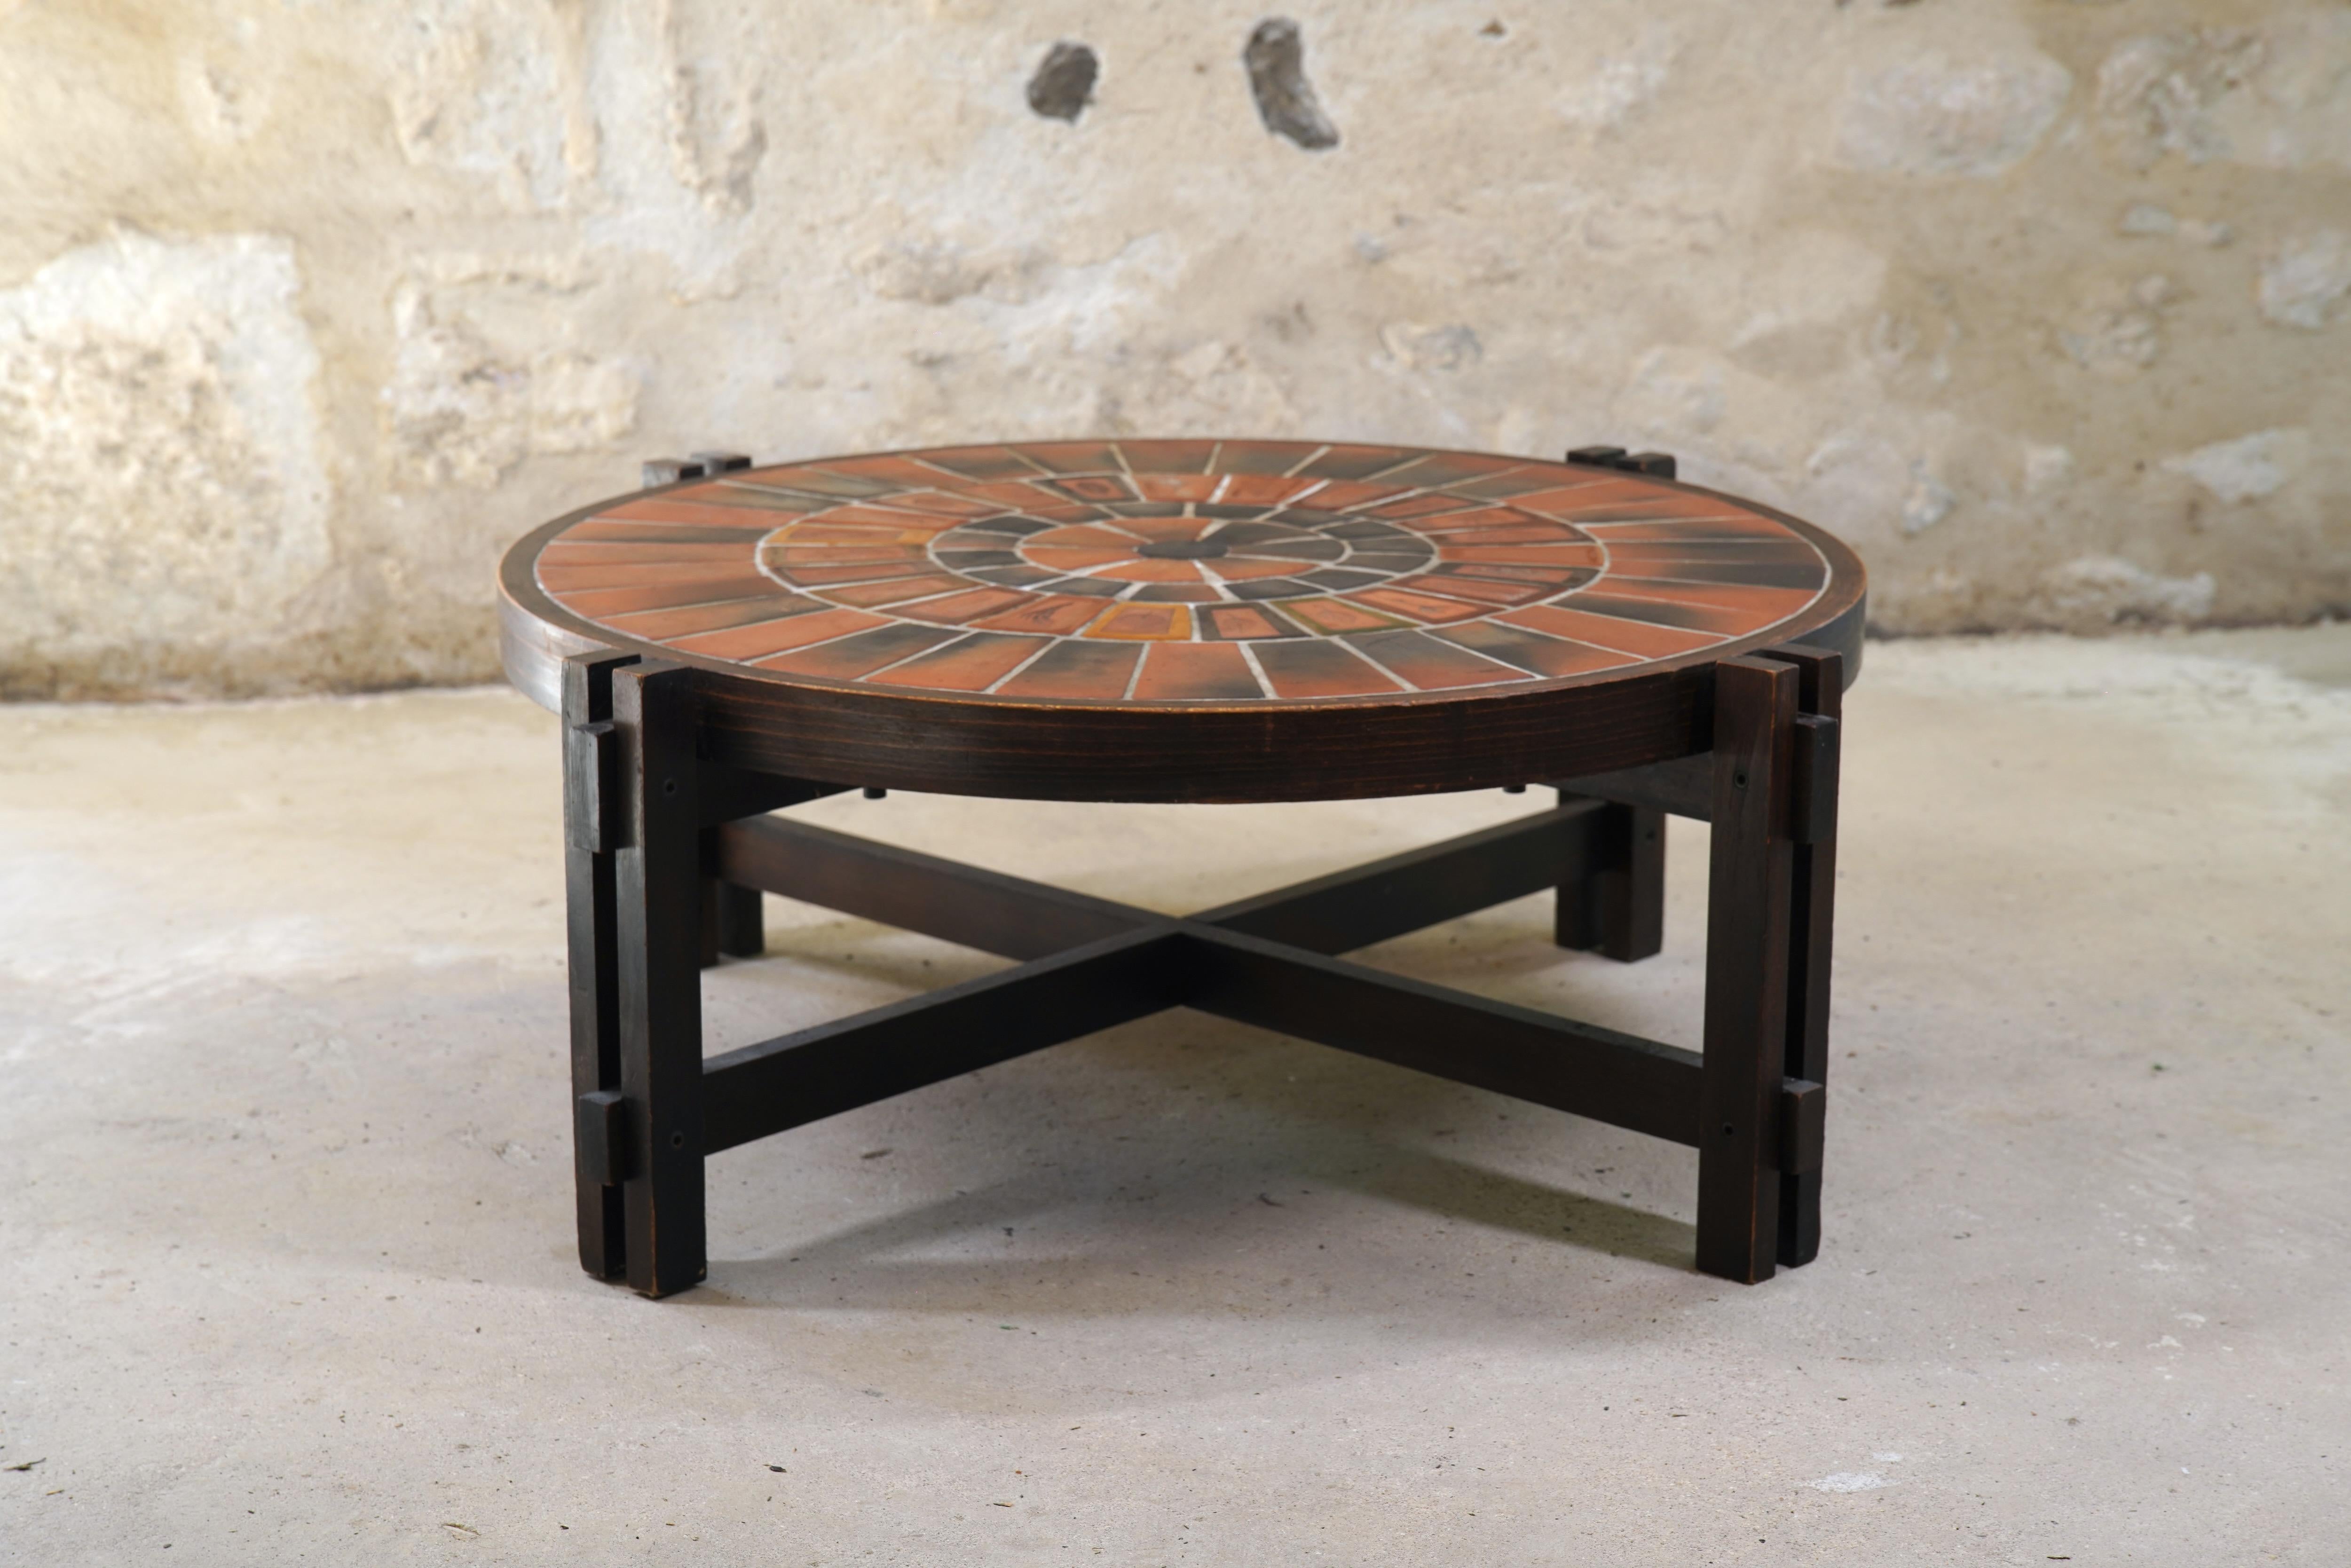 Merveilleuse table basse en céramique de Roger Capron avec des carreaux de Garrigue de France, vers les années 1960.

Les carreaux de Garrigue, fabriqués à la main, sont issus d'une technique où de vraies feuilles sont pressées dans l'argile et se